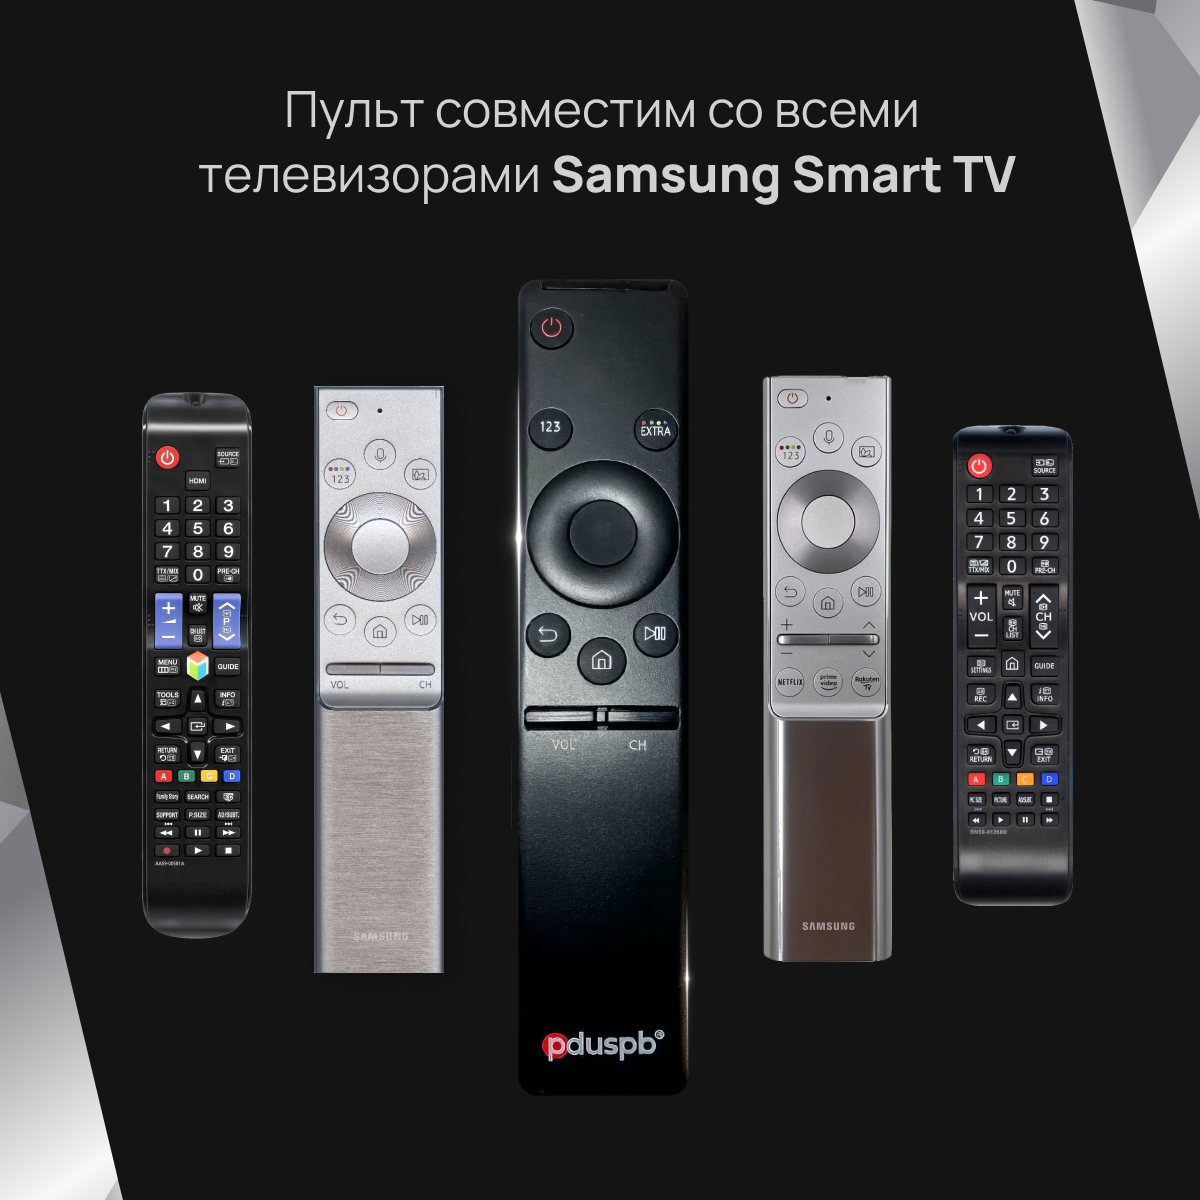 Универсальный пульт ду Samsung Smart Control. Для всех телевизоров Самсунг Смарт ТВ